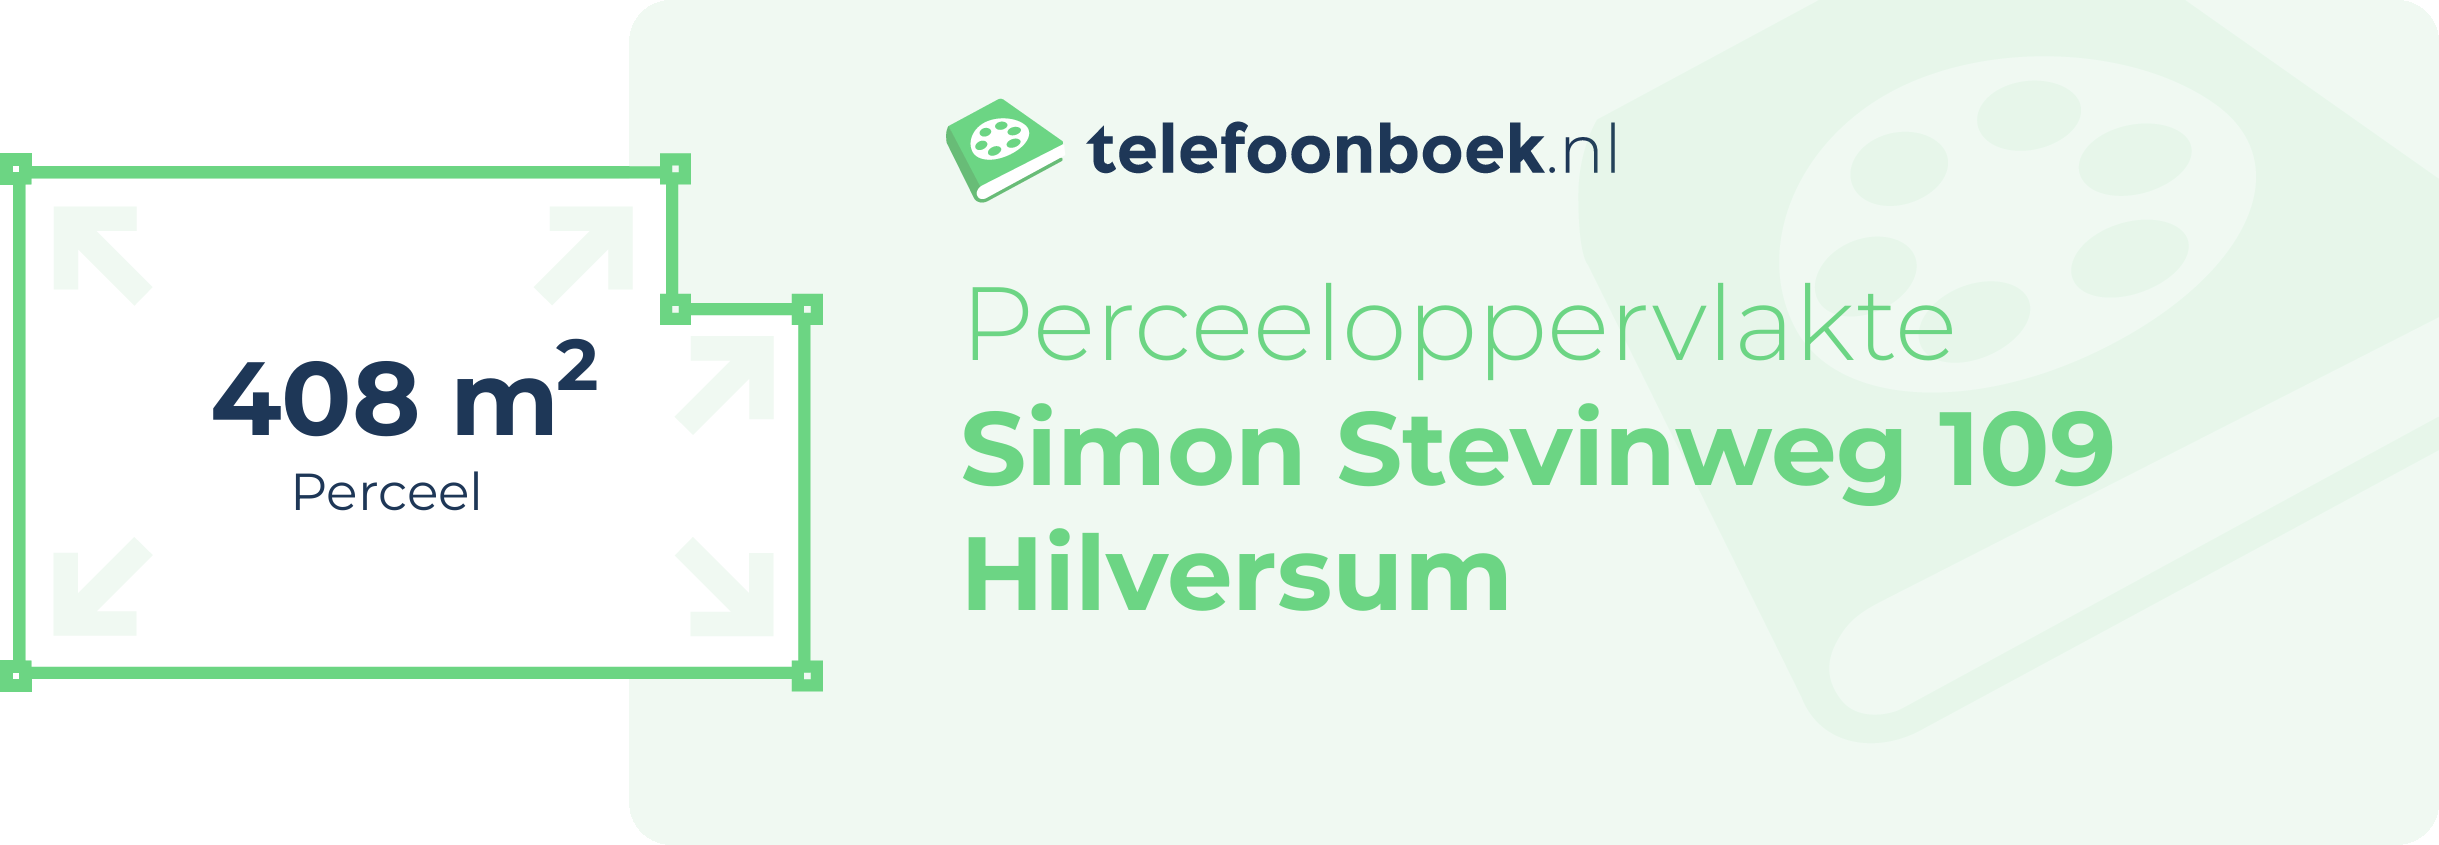 Perceeloppervlakte Simon Stevinweg 109 Hilversum